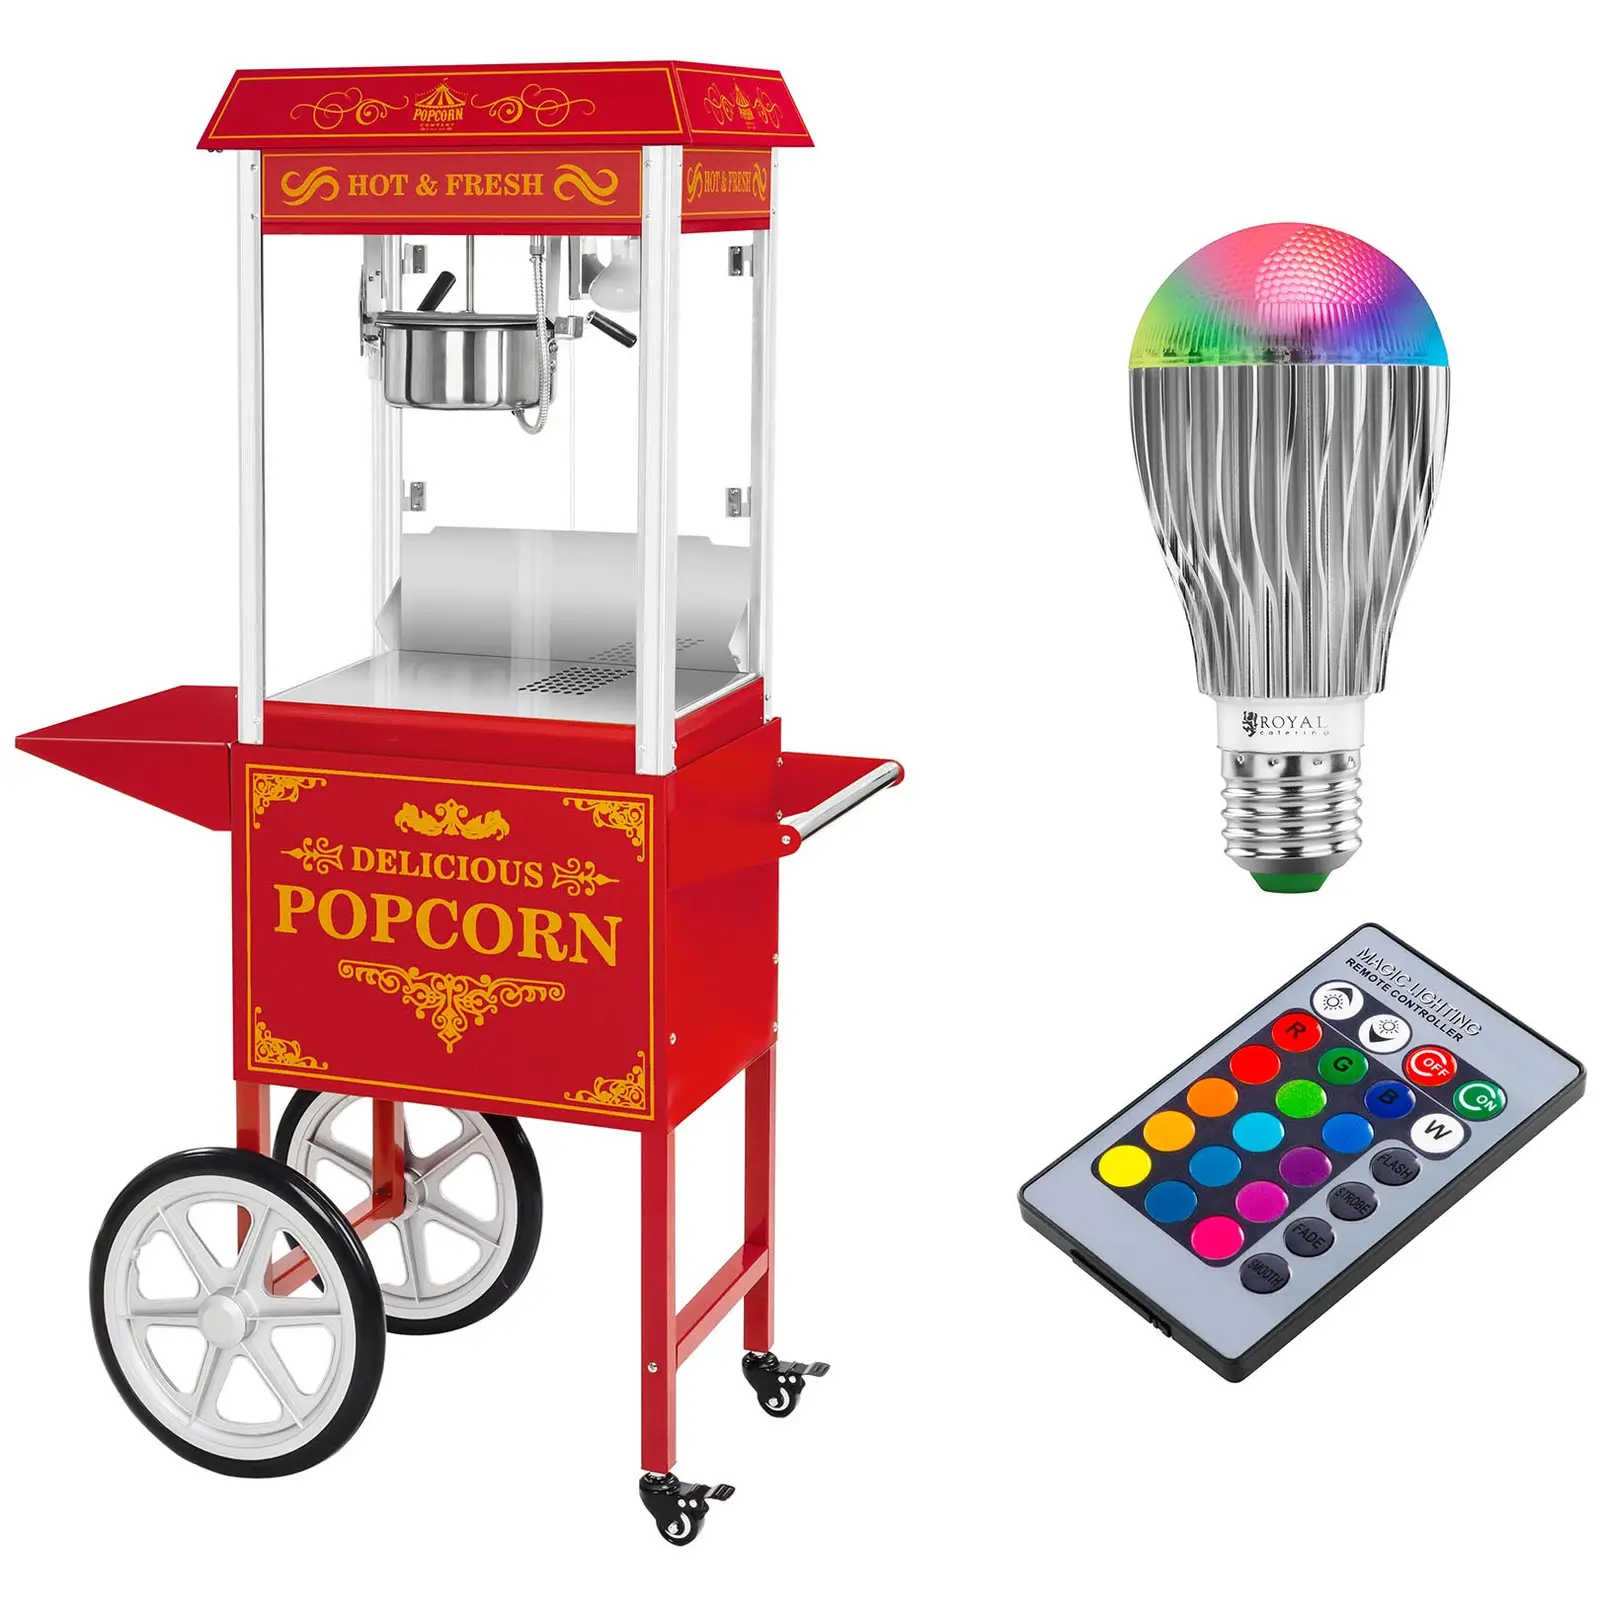 Popcornmaskin med vogn og LED-belysning i Retro-design - rød